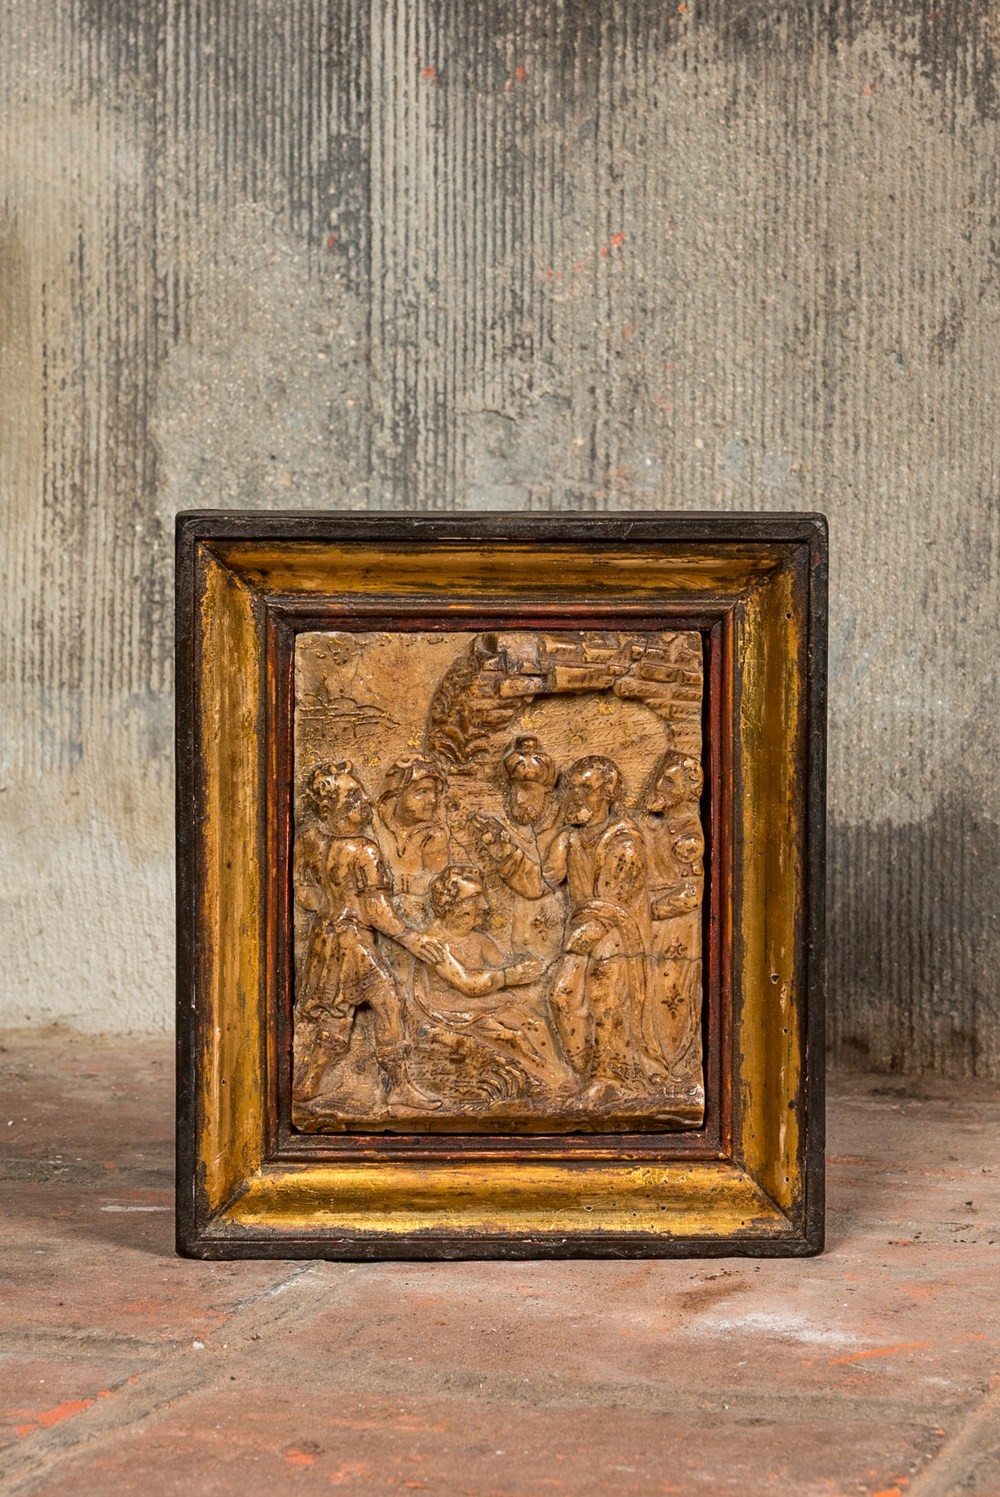 Relief en alb&acirc;tre sculpt&eacute; avec rehauts d'or repr&eacute;sentant la r&eacute;surrection de Lazare, atelier de Nicolaes Daems, Malines, vers 1600